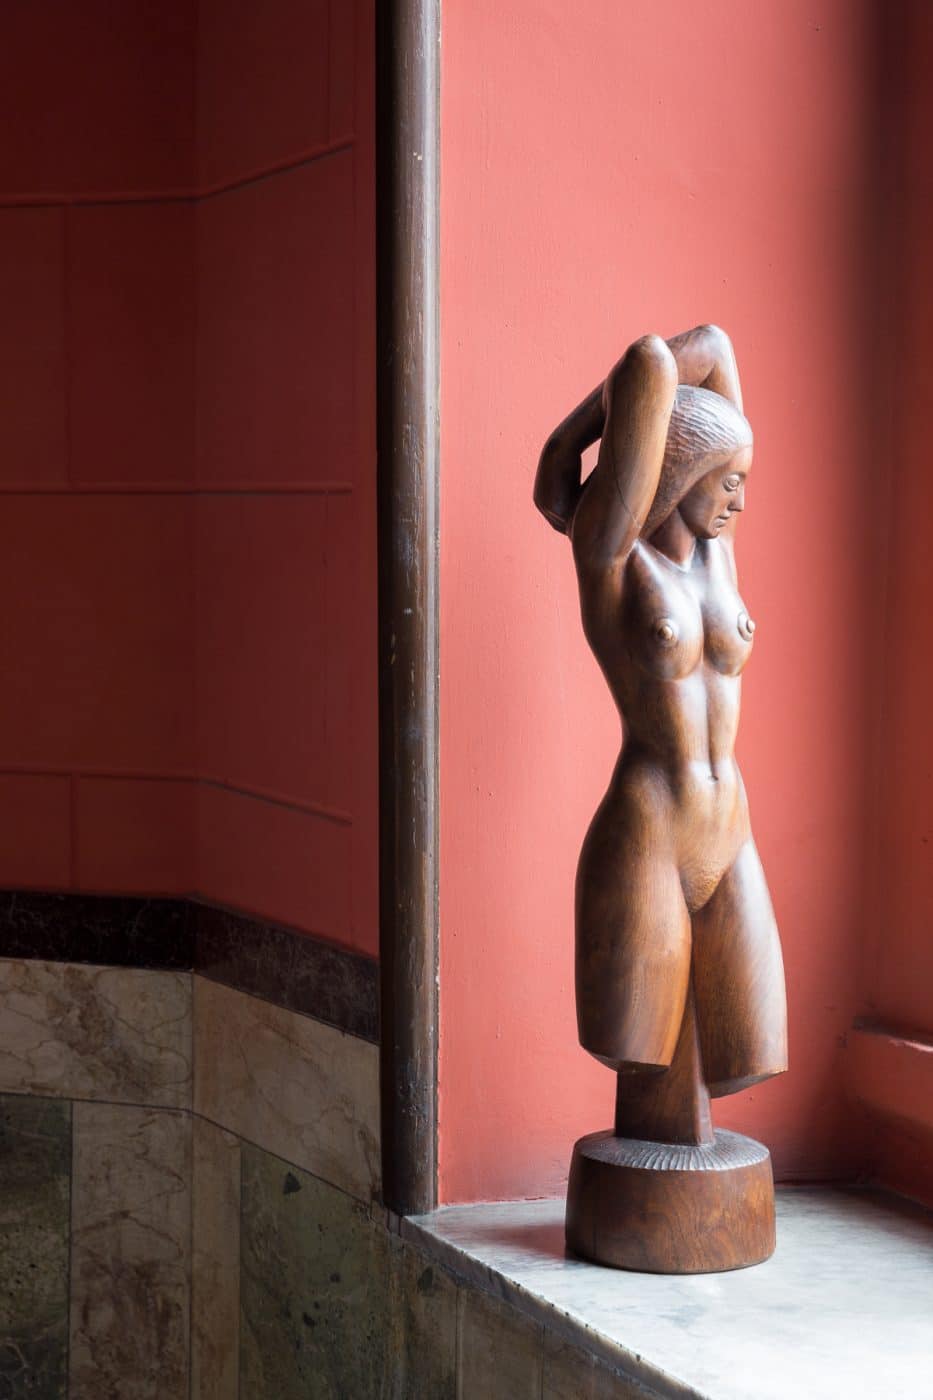 Holzskulptur einer nackten stehenden Frau von 1938, geschaffen vom amerikanischen Künstler James House